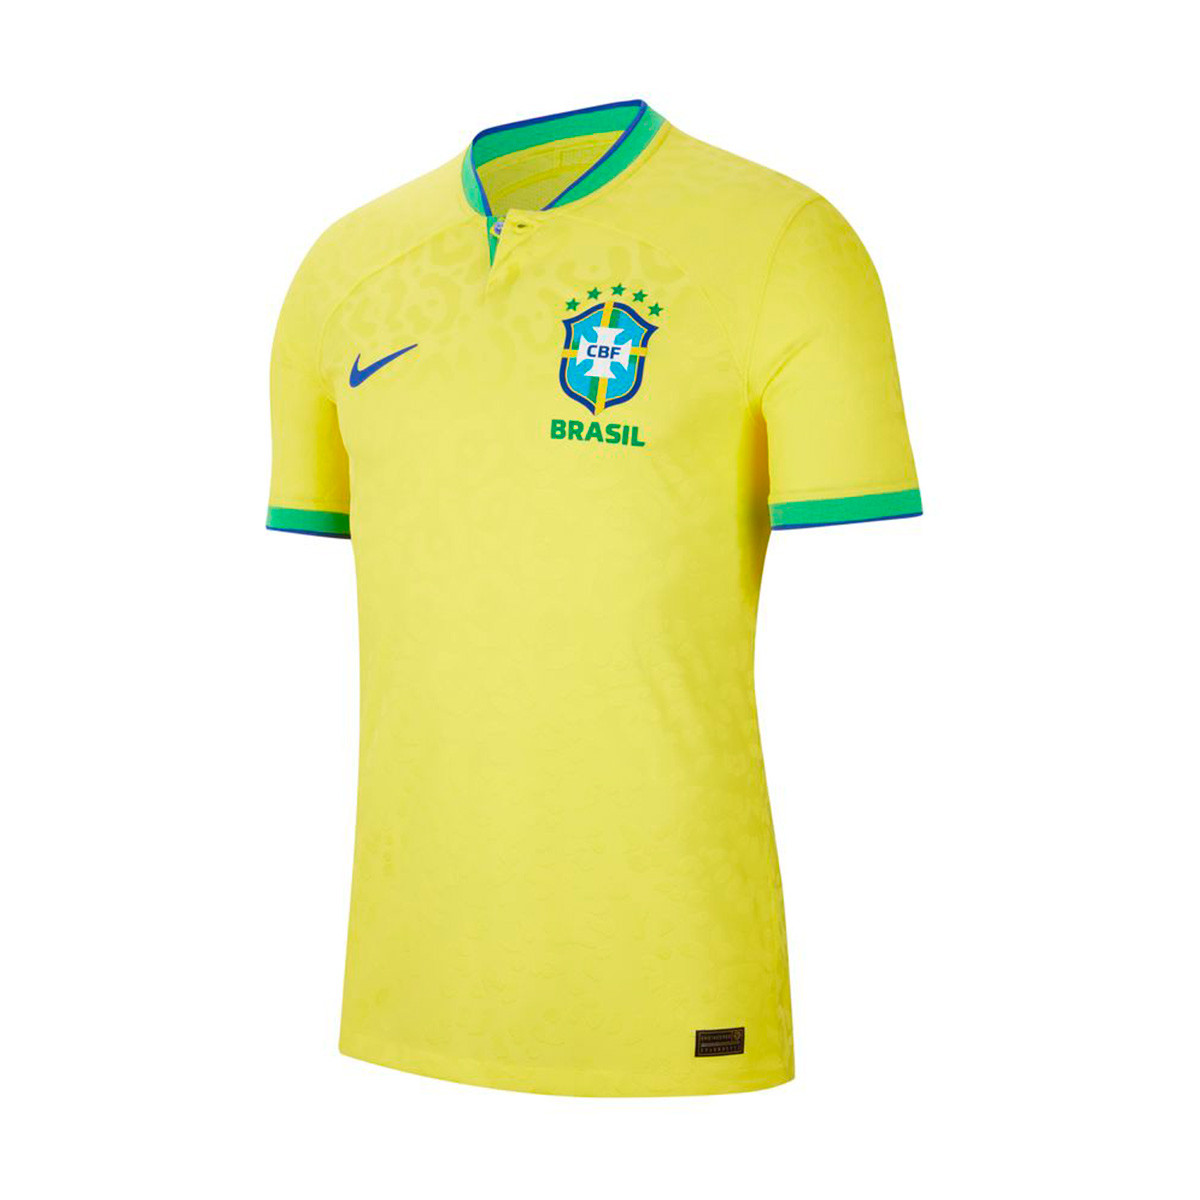 Camiseta Nike Brasil Primera Equipación Match Mundial Qatar 2022 Dynamic Yellow-Green Spark-Paramount Blue - Fútbol